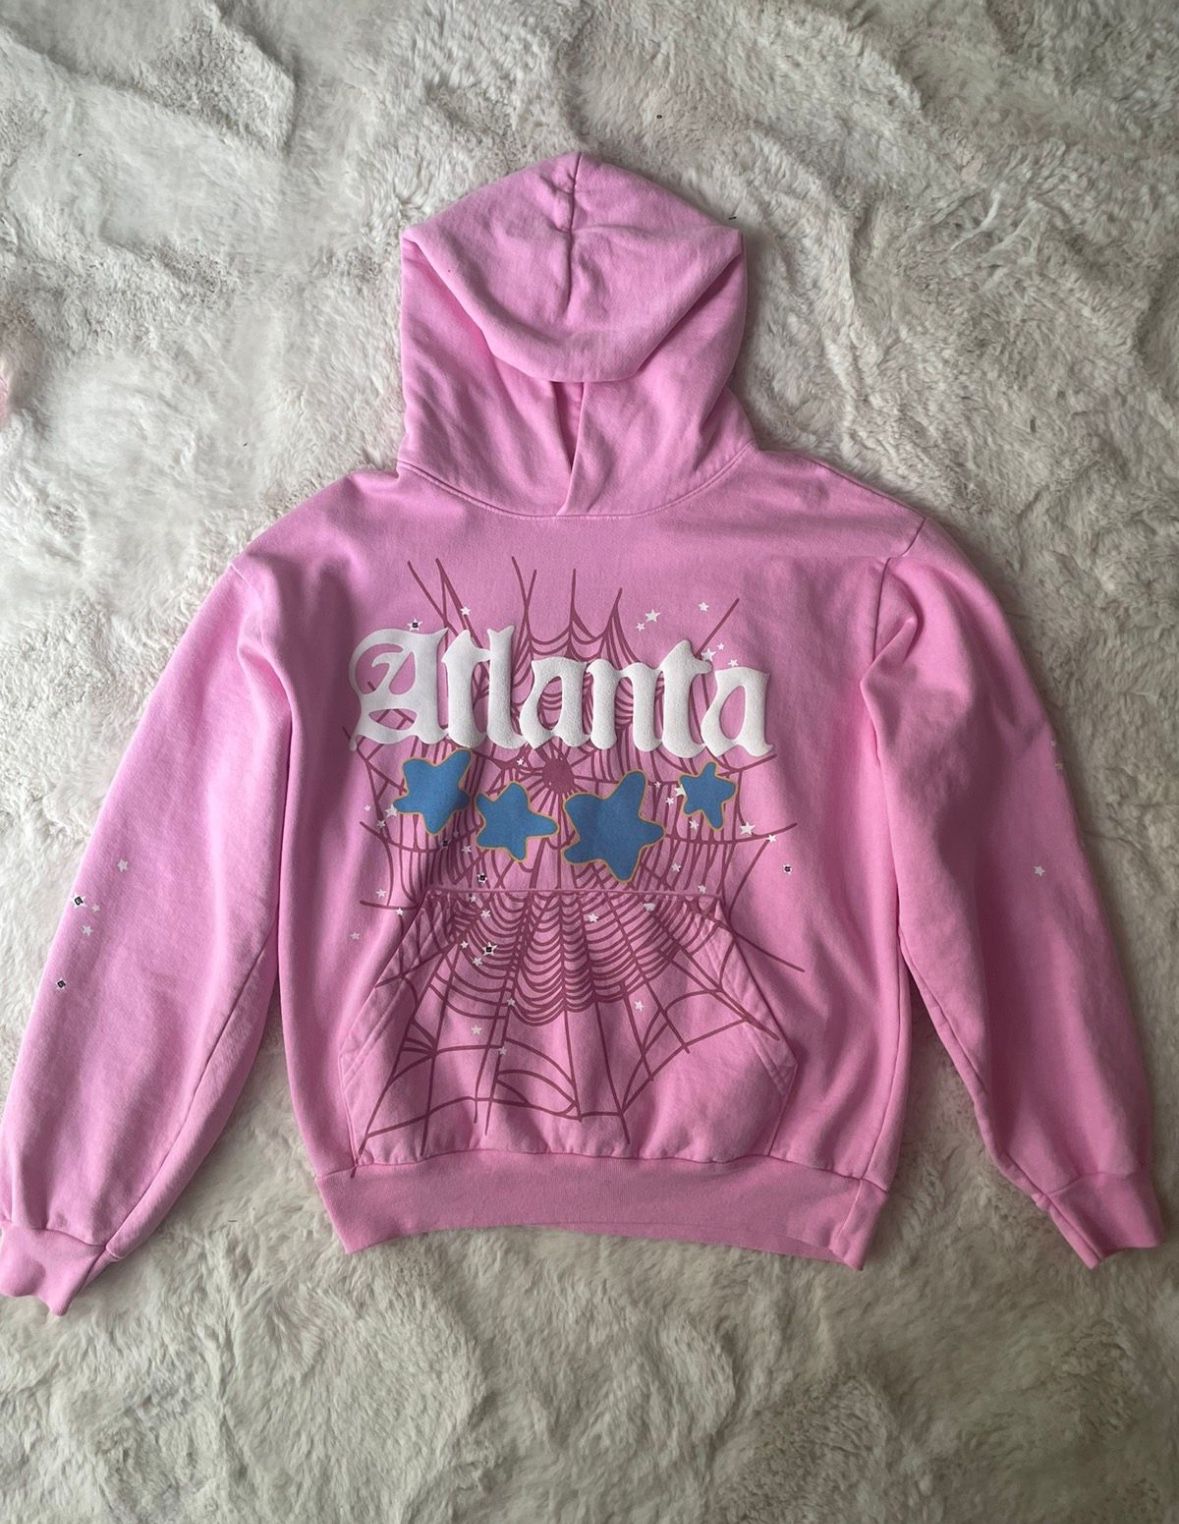 pink atlanta sp5der hoodie